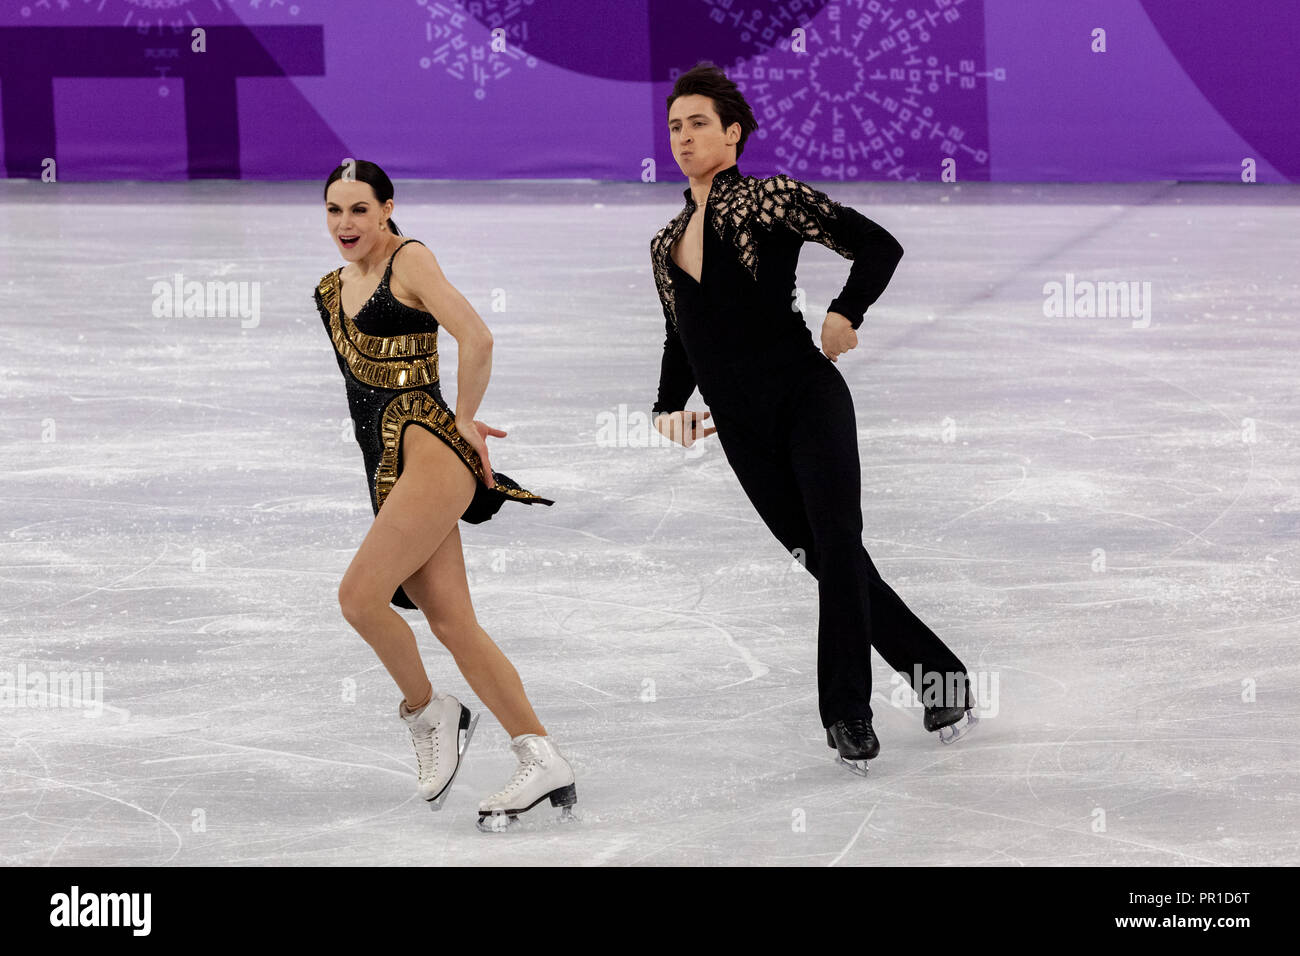 Tessa Virtue et Scott Moir (CAN) au cours de la compétition de danse de l'équipe de patinage artistique aux Jeux Olympiques d'hiver de PyeongChang 2018 Banque D'Images